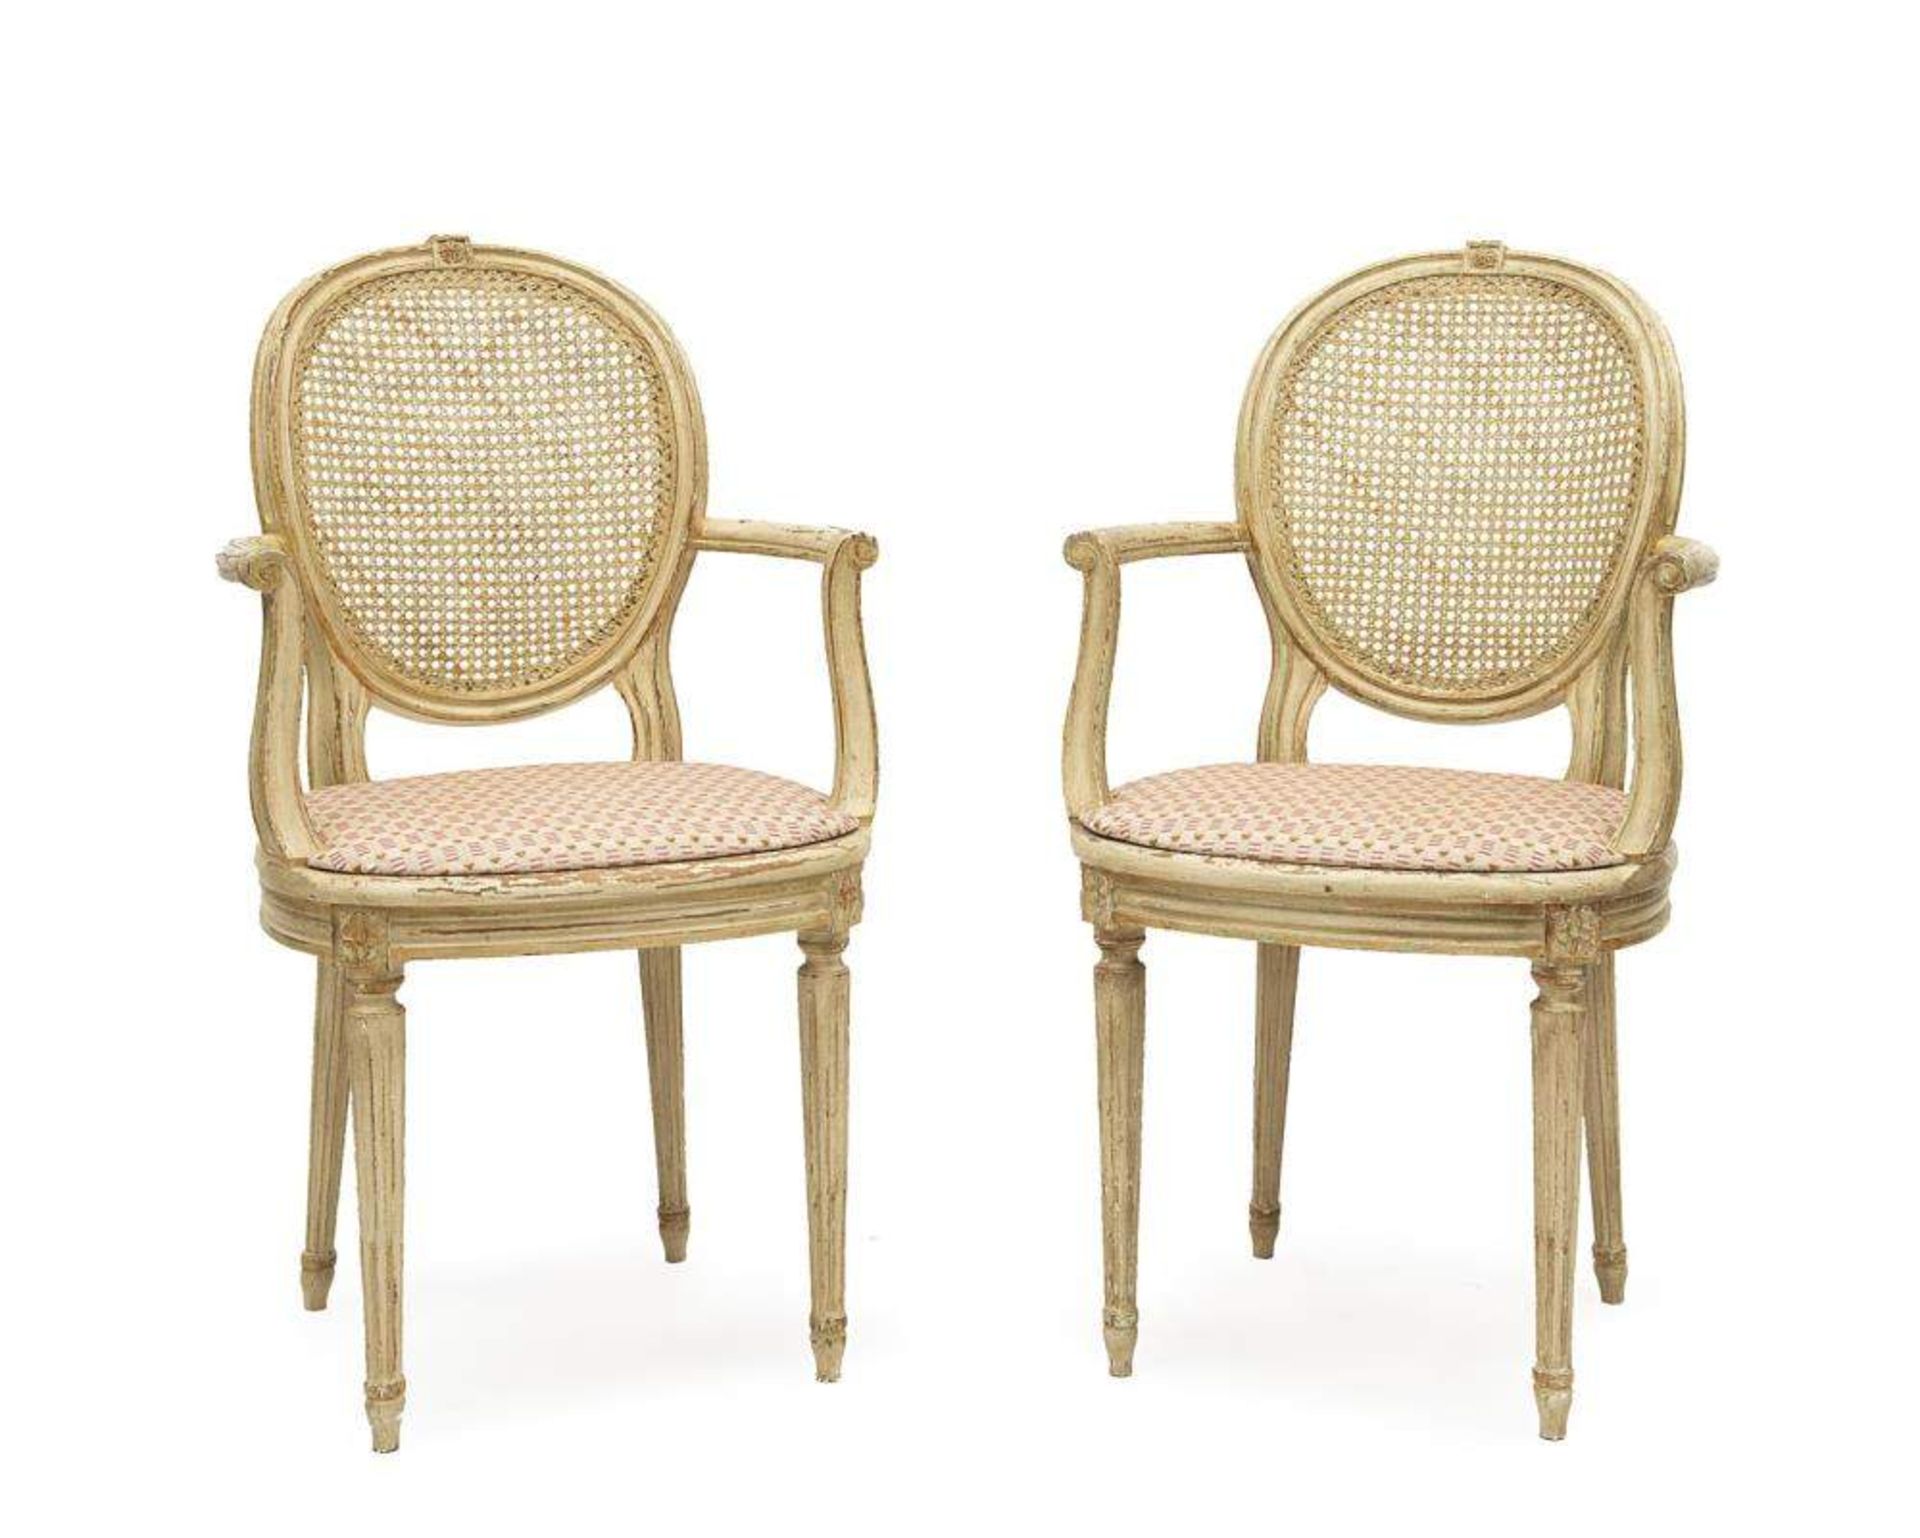 paire de fauteuils de style Louis XVI en bois peint blanc et assise et dossier canné

H. 94x57x53